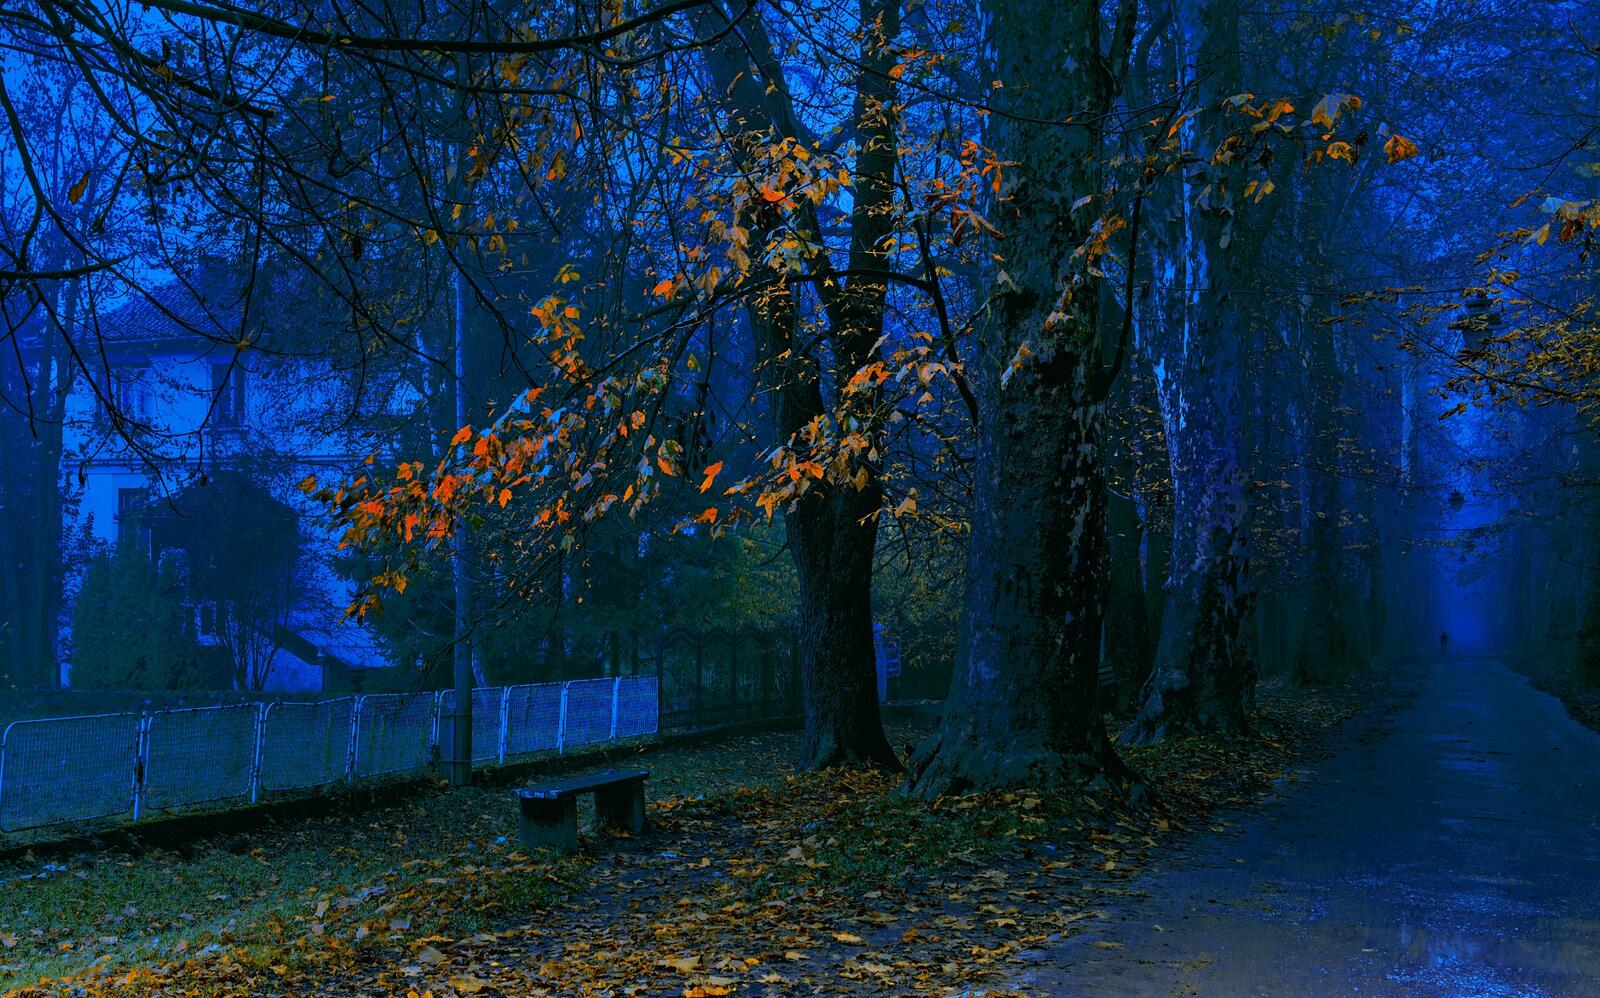 Wallpapers night autumn dusk on the desktop